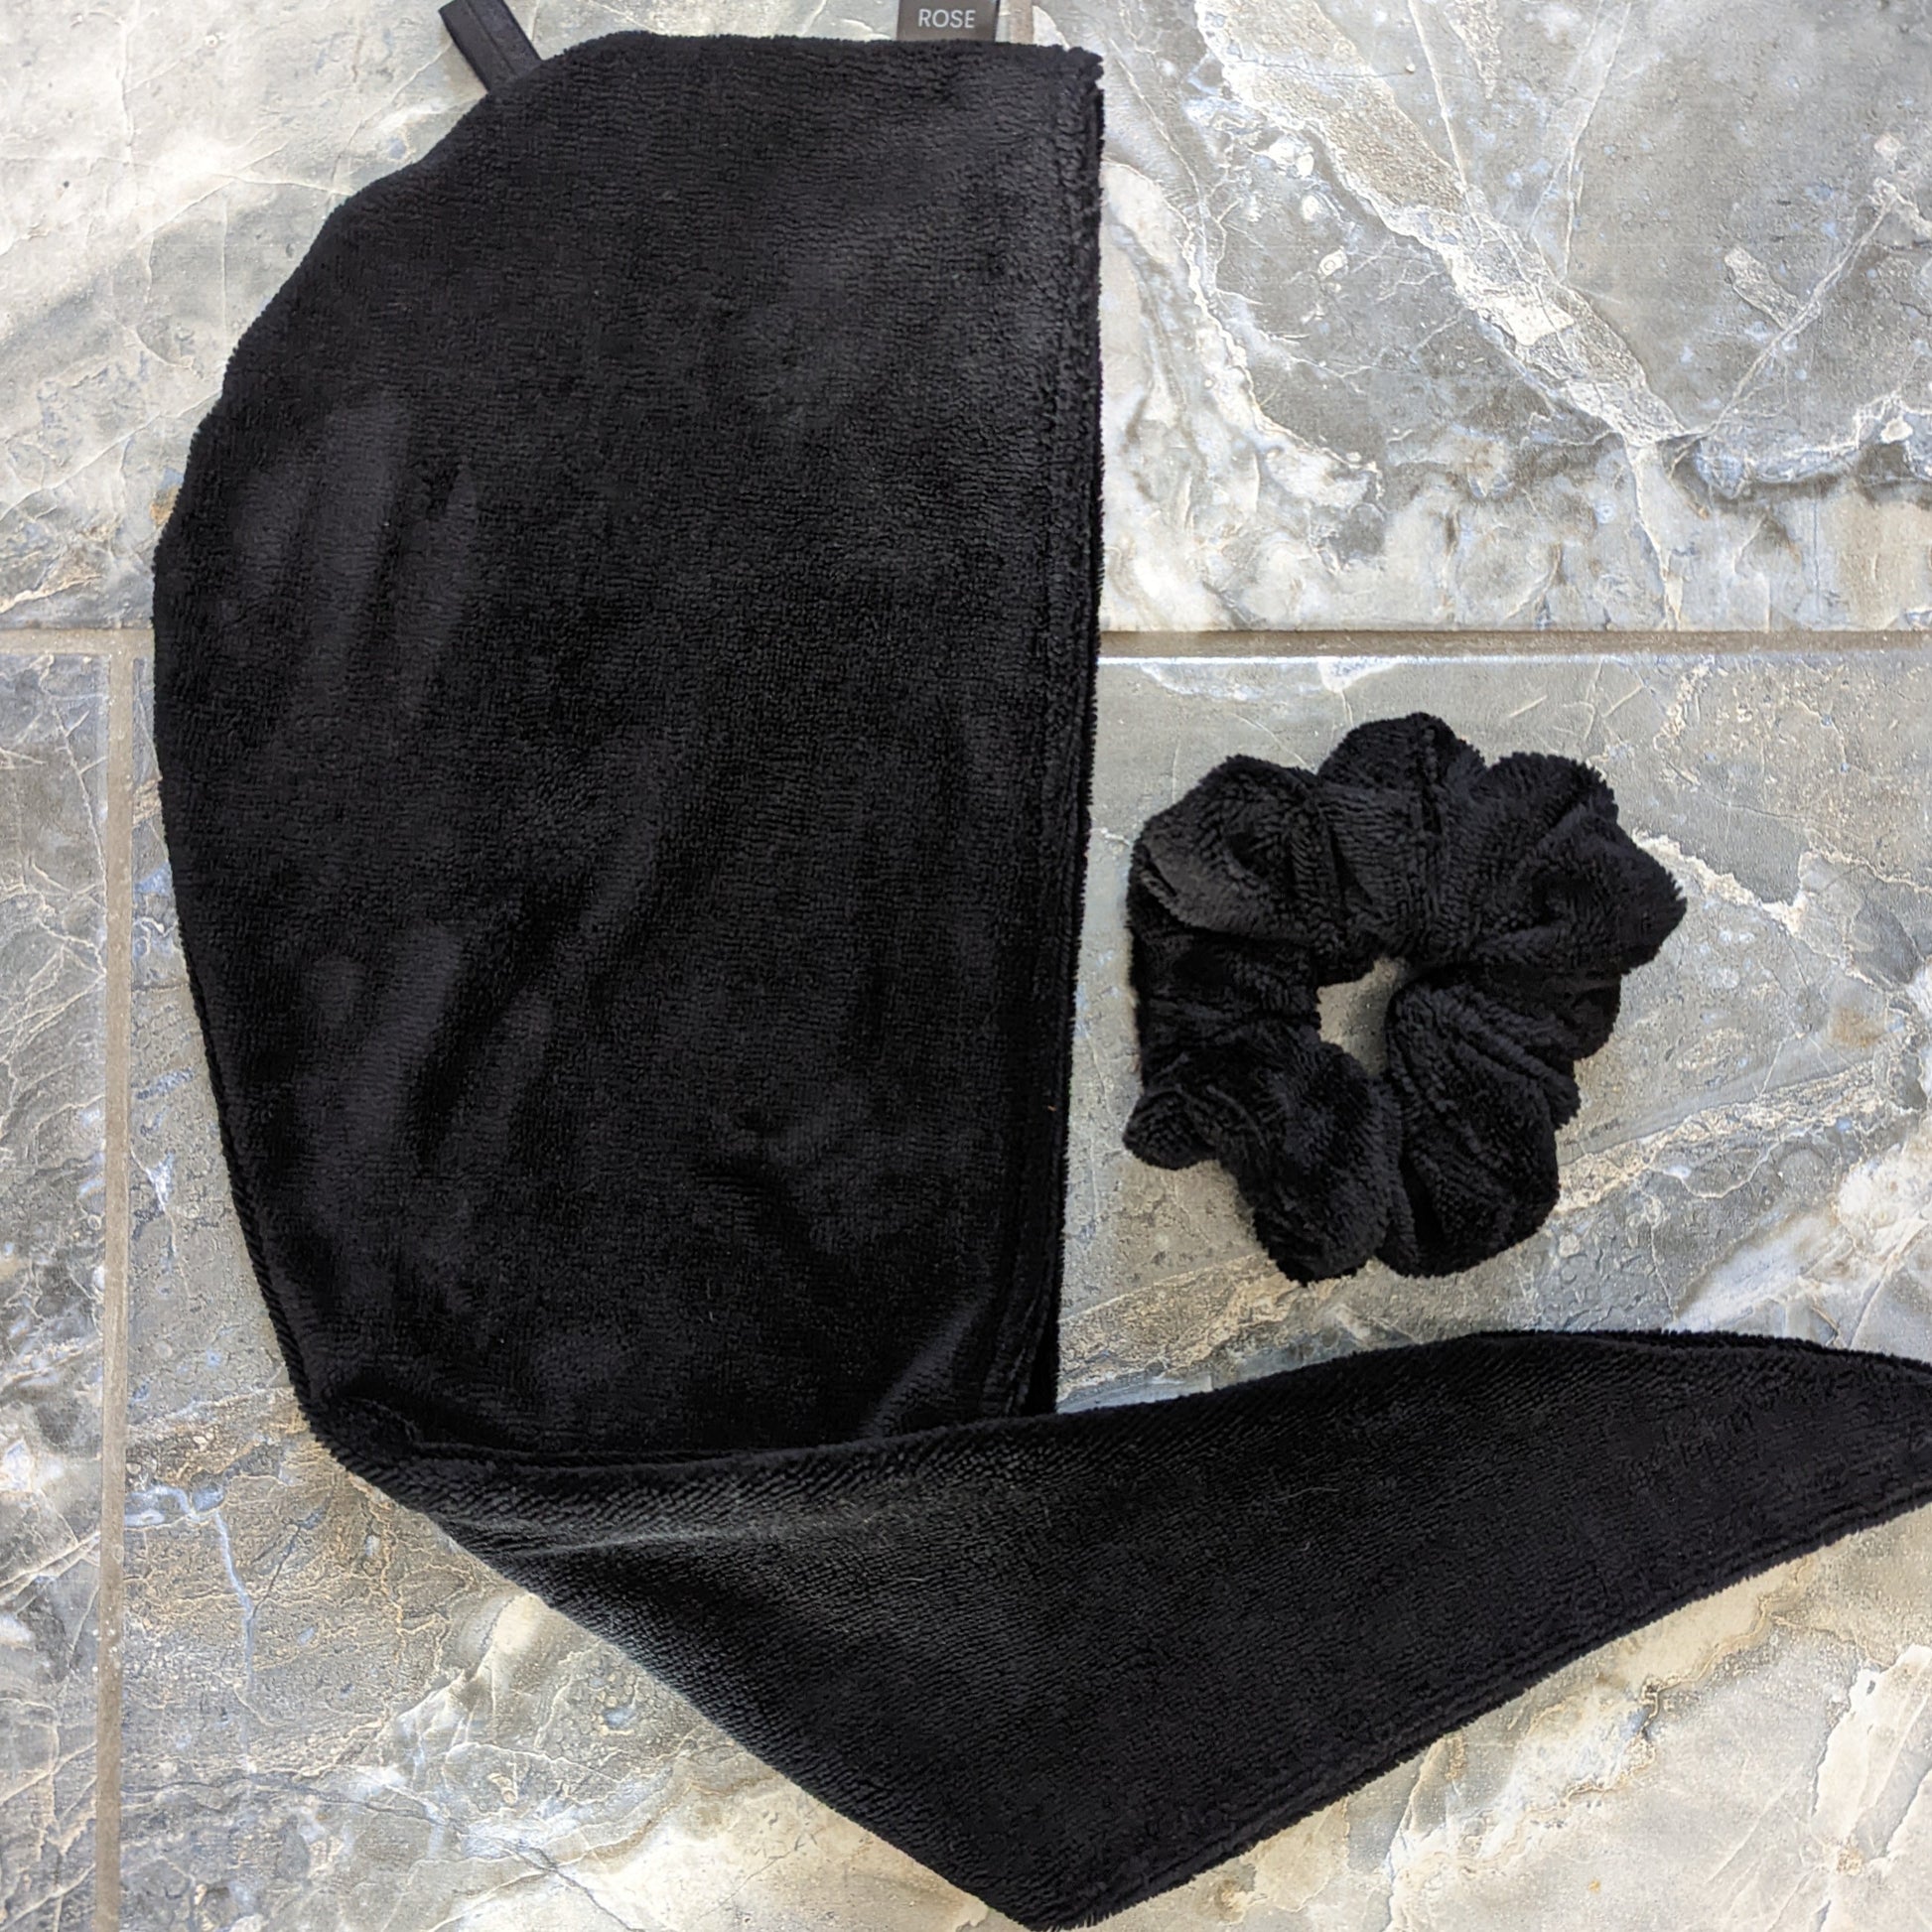 black luxe microfiber hair scrunchie and hair towel, the longest hair towel in Canada